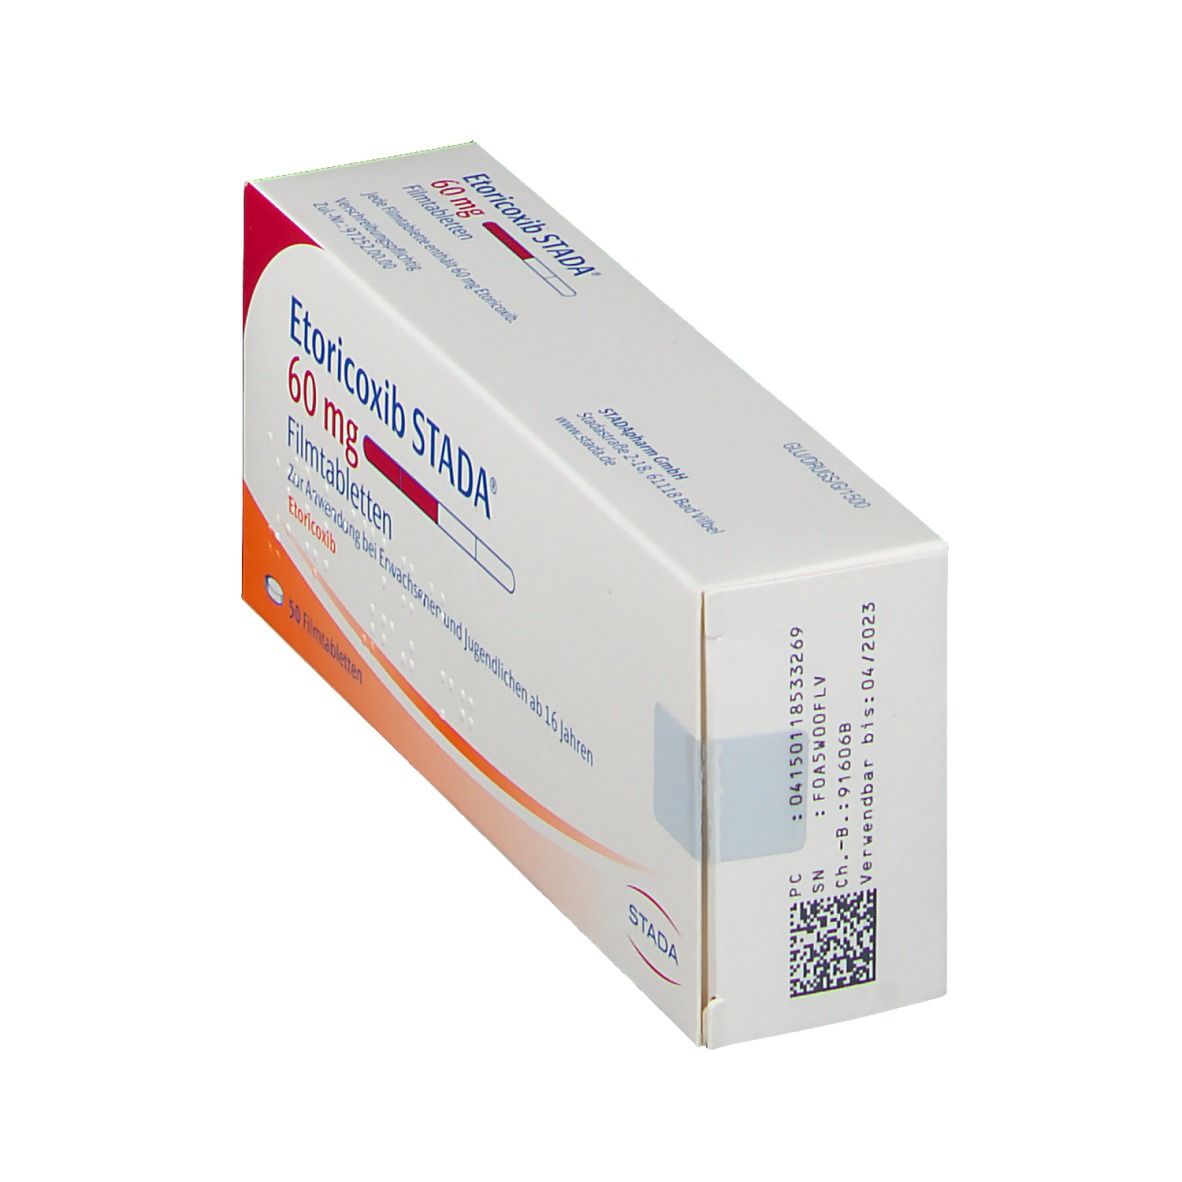 Etoricoxib STADA® 60 mg